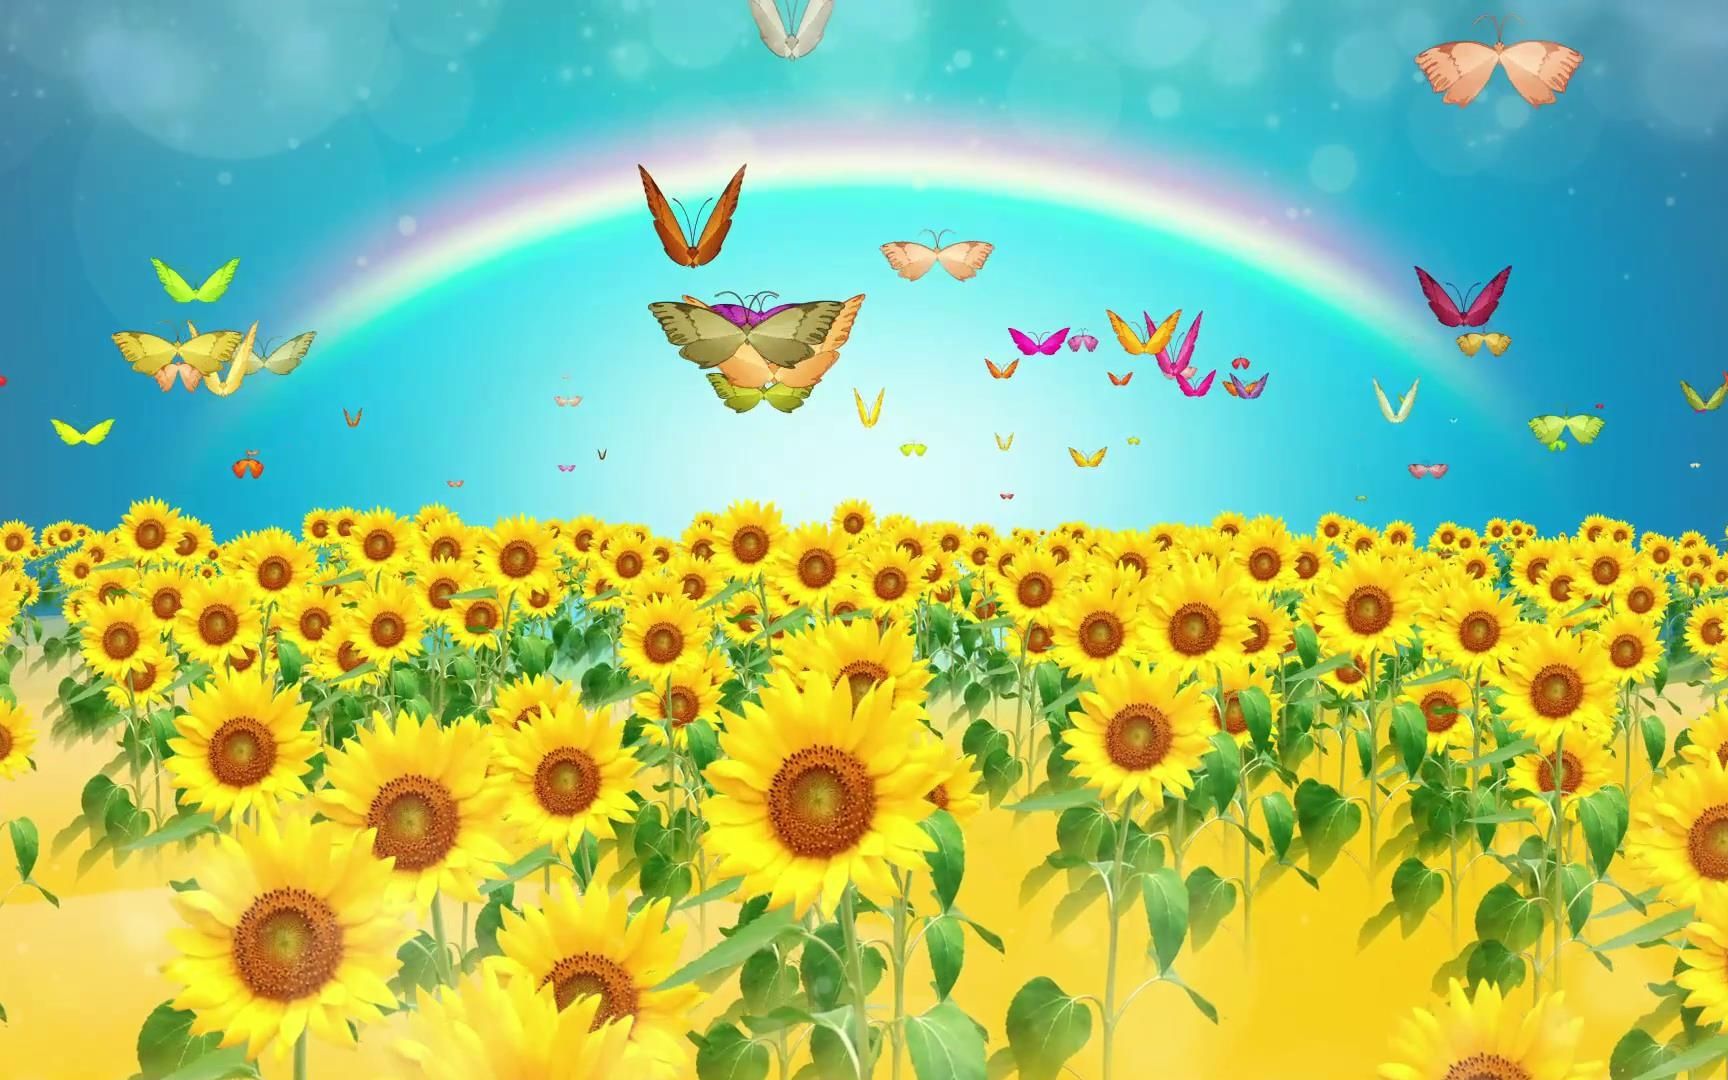 《红红的太阳》大屏幕背景视频儿童卡通动画向日葵彩虹云朵蝴蝶舞蹈